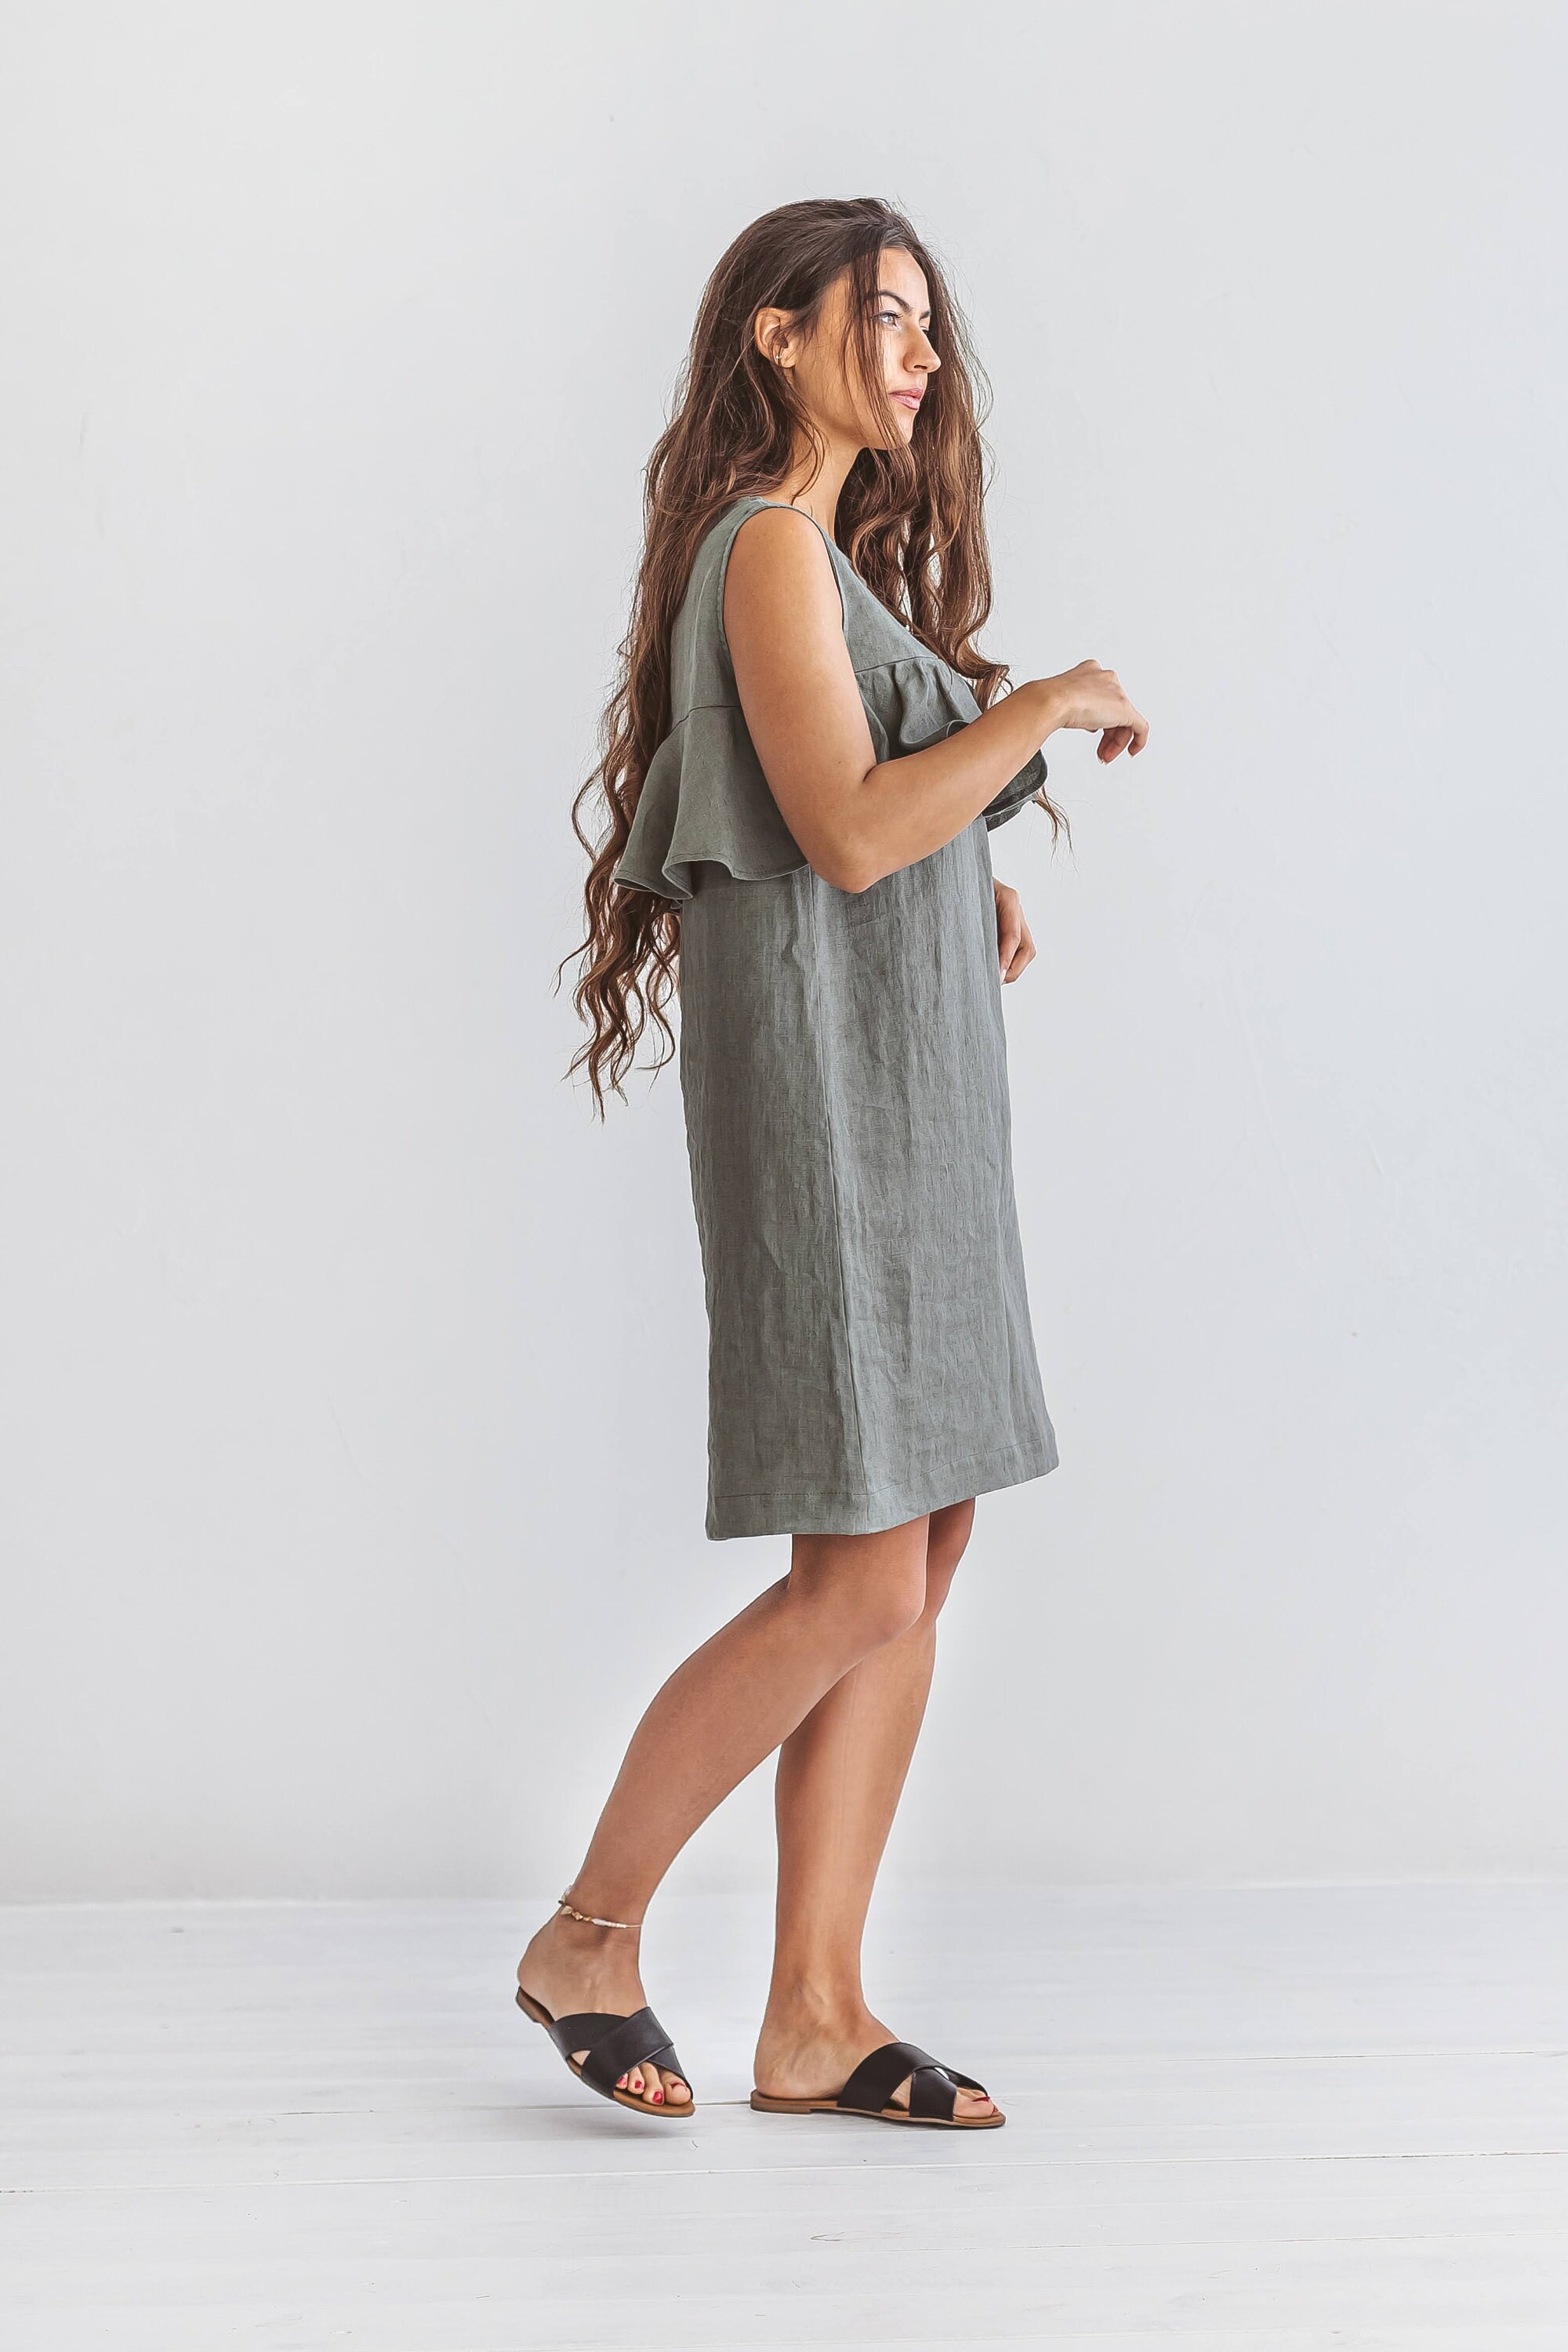 SCARLETT Linen Sleeveless Dress, Summer Dress in Midi Length - Etsy UK